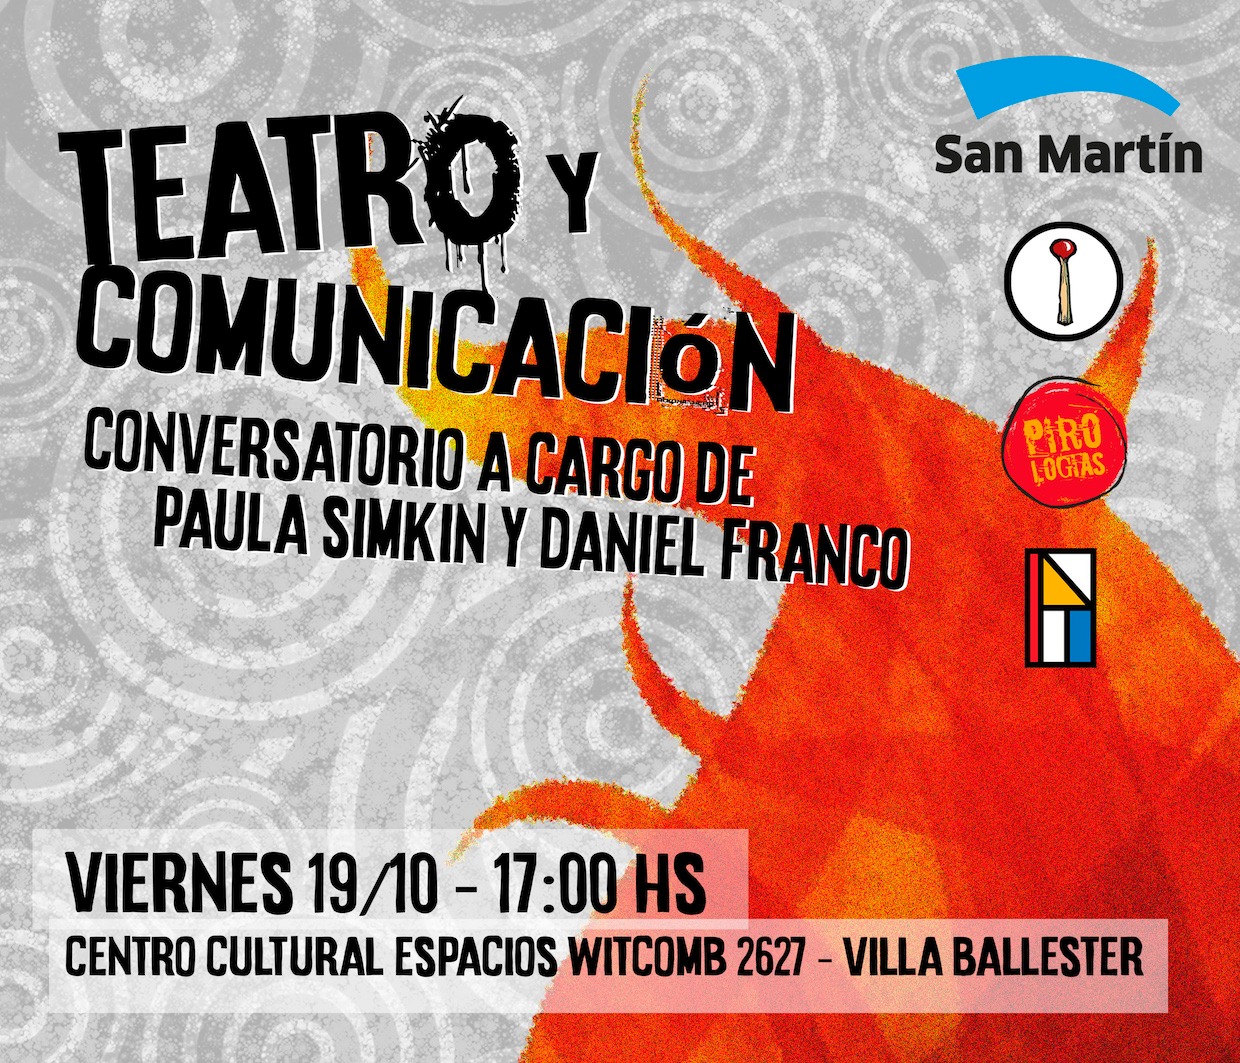 Teatro y Comunicación